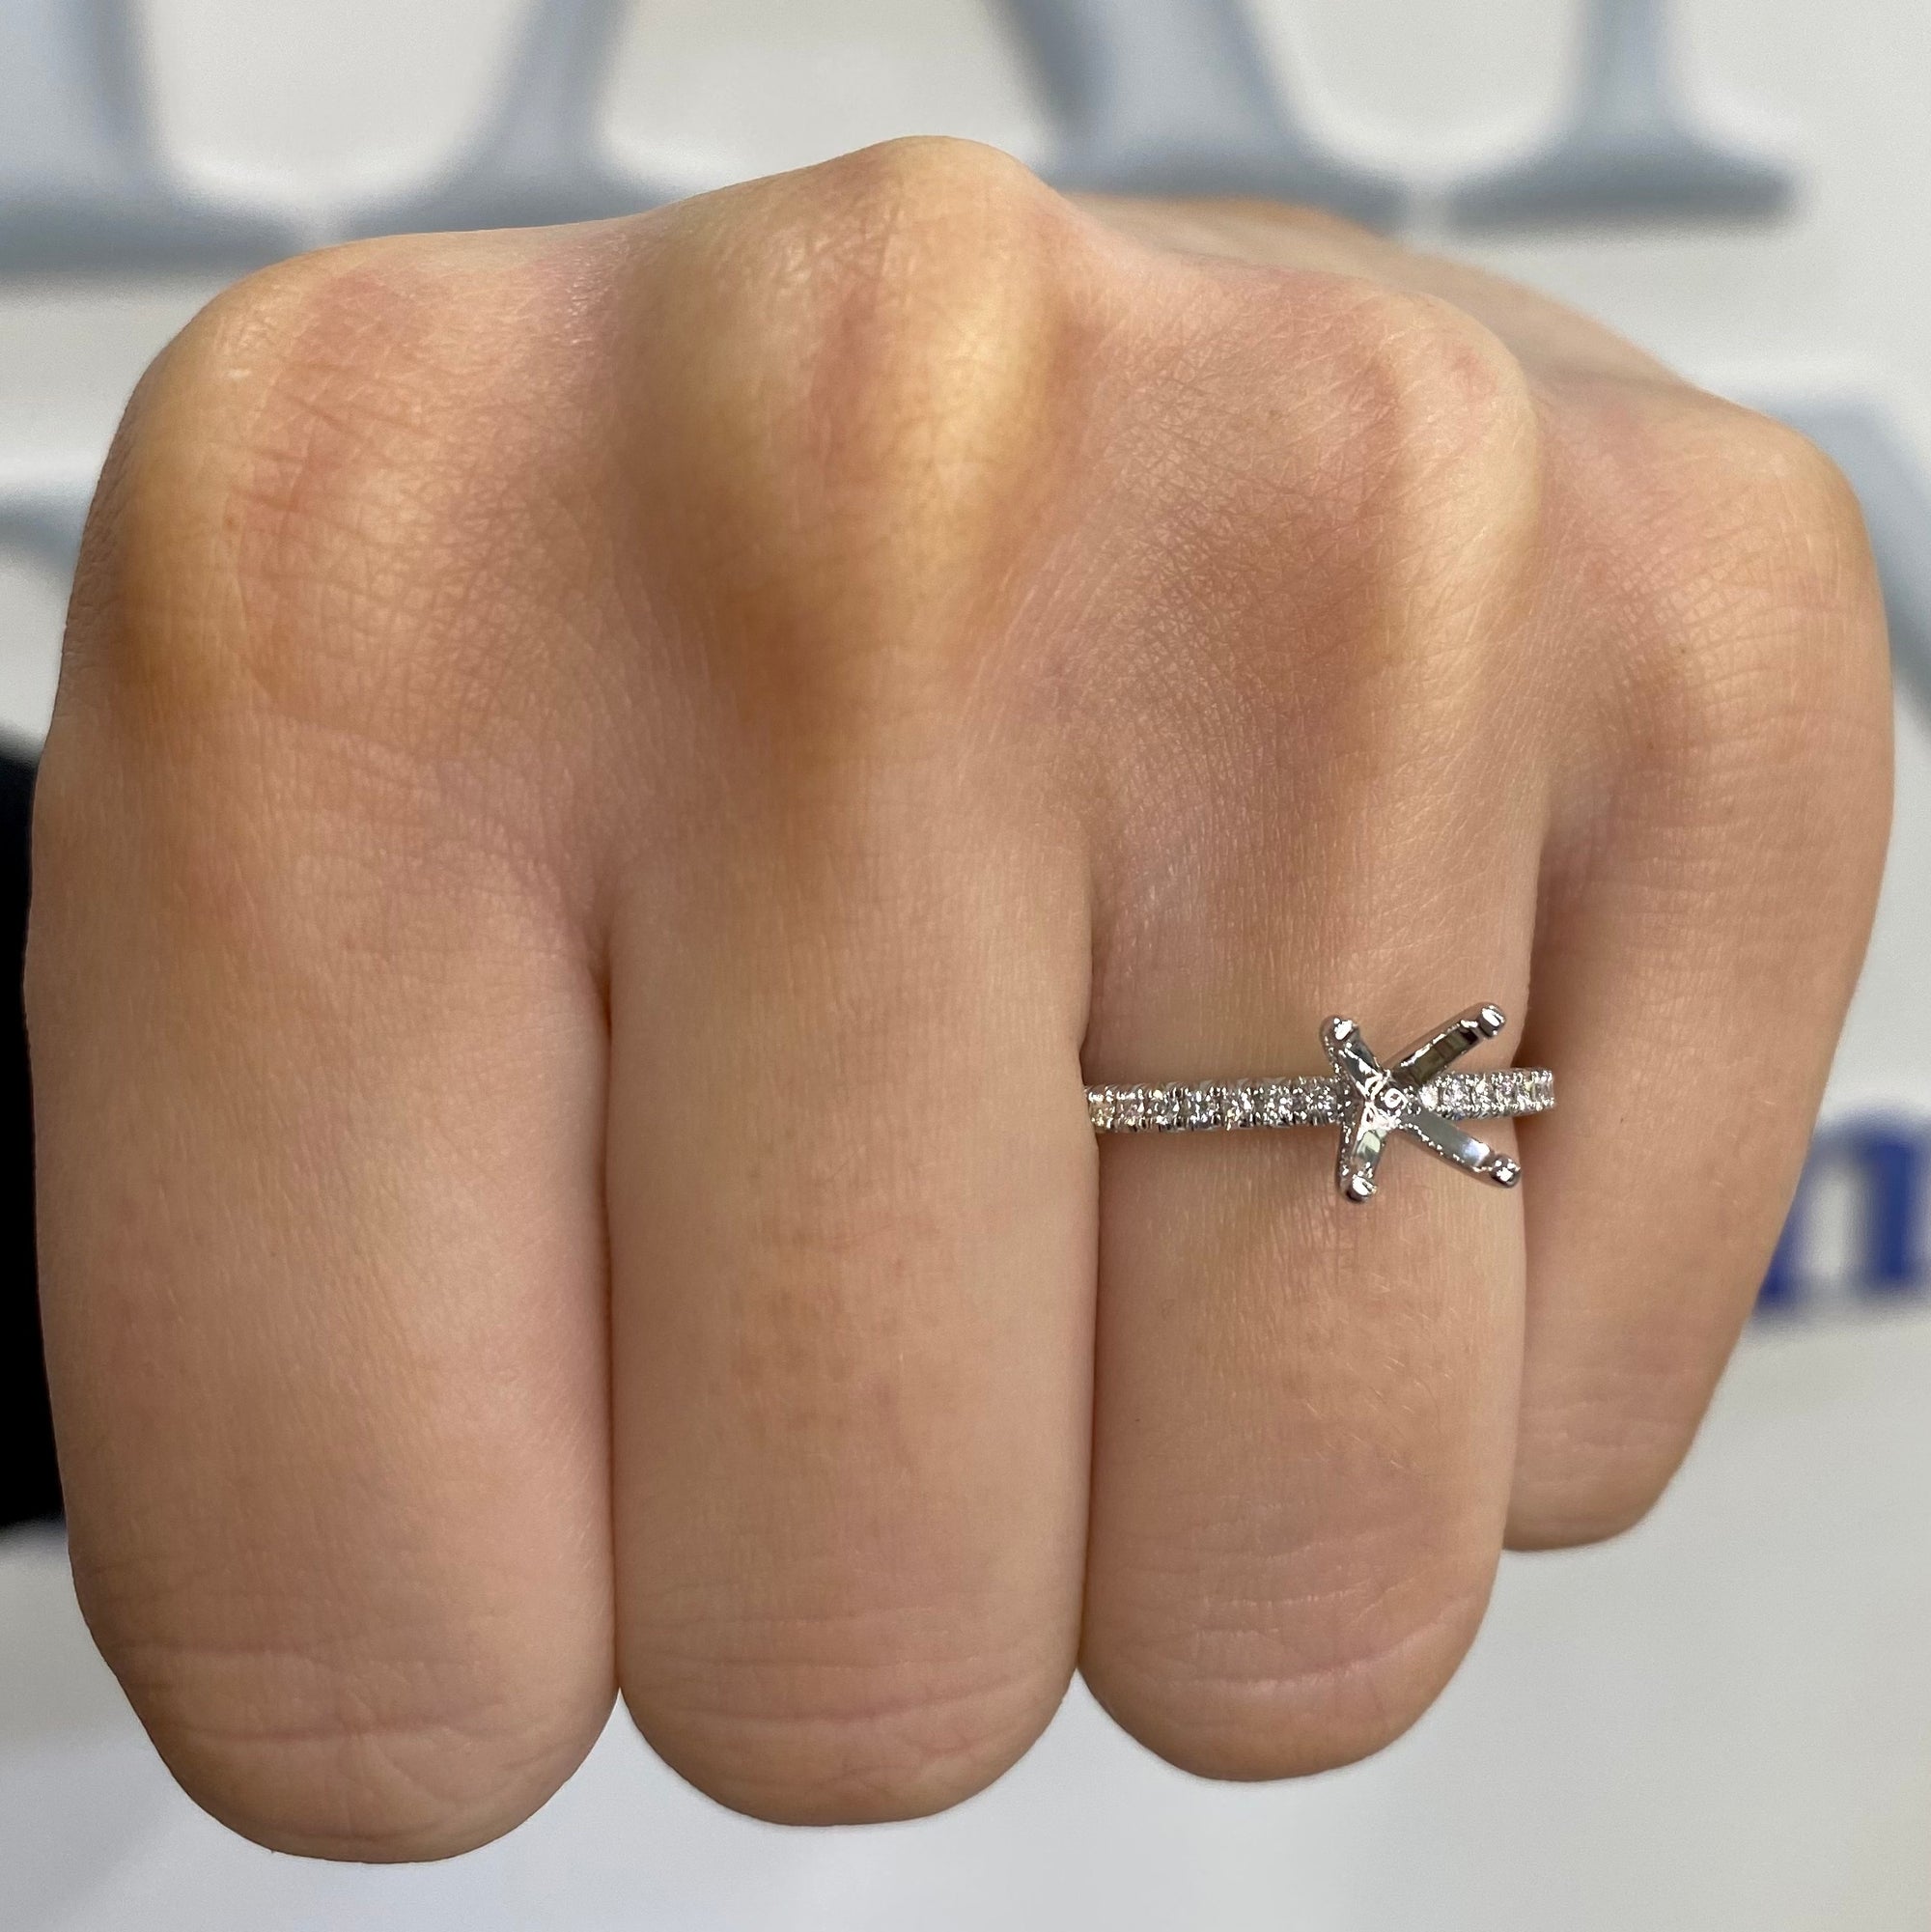 Diamond Engagement Ring Semi-Mount, 0.13 Carat Total Weight